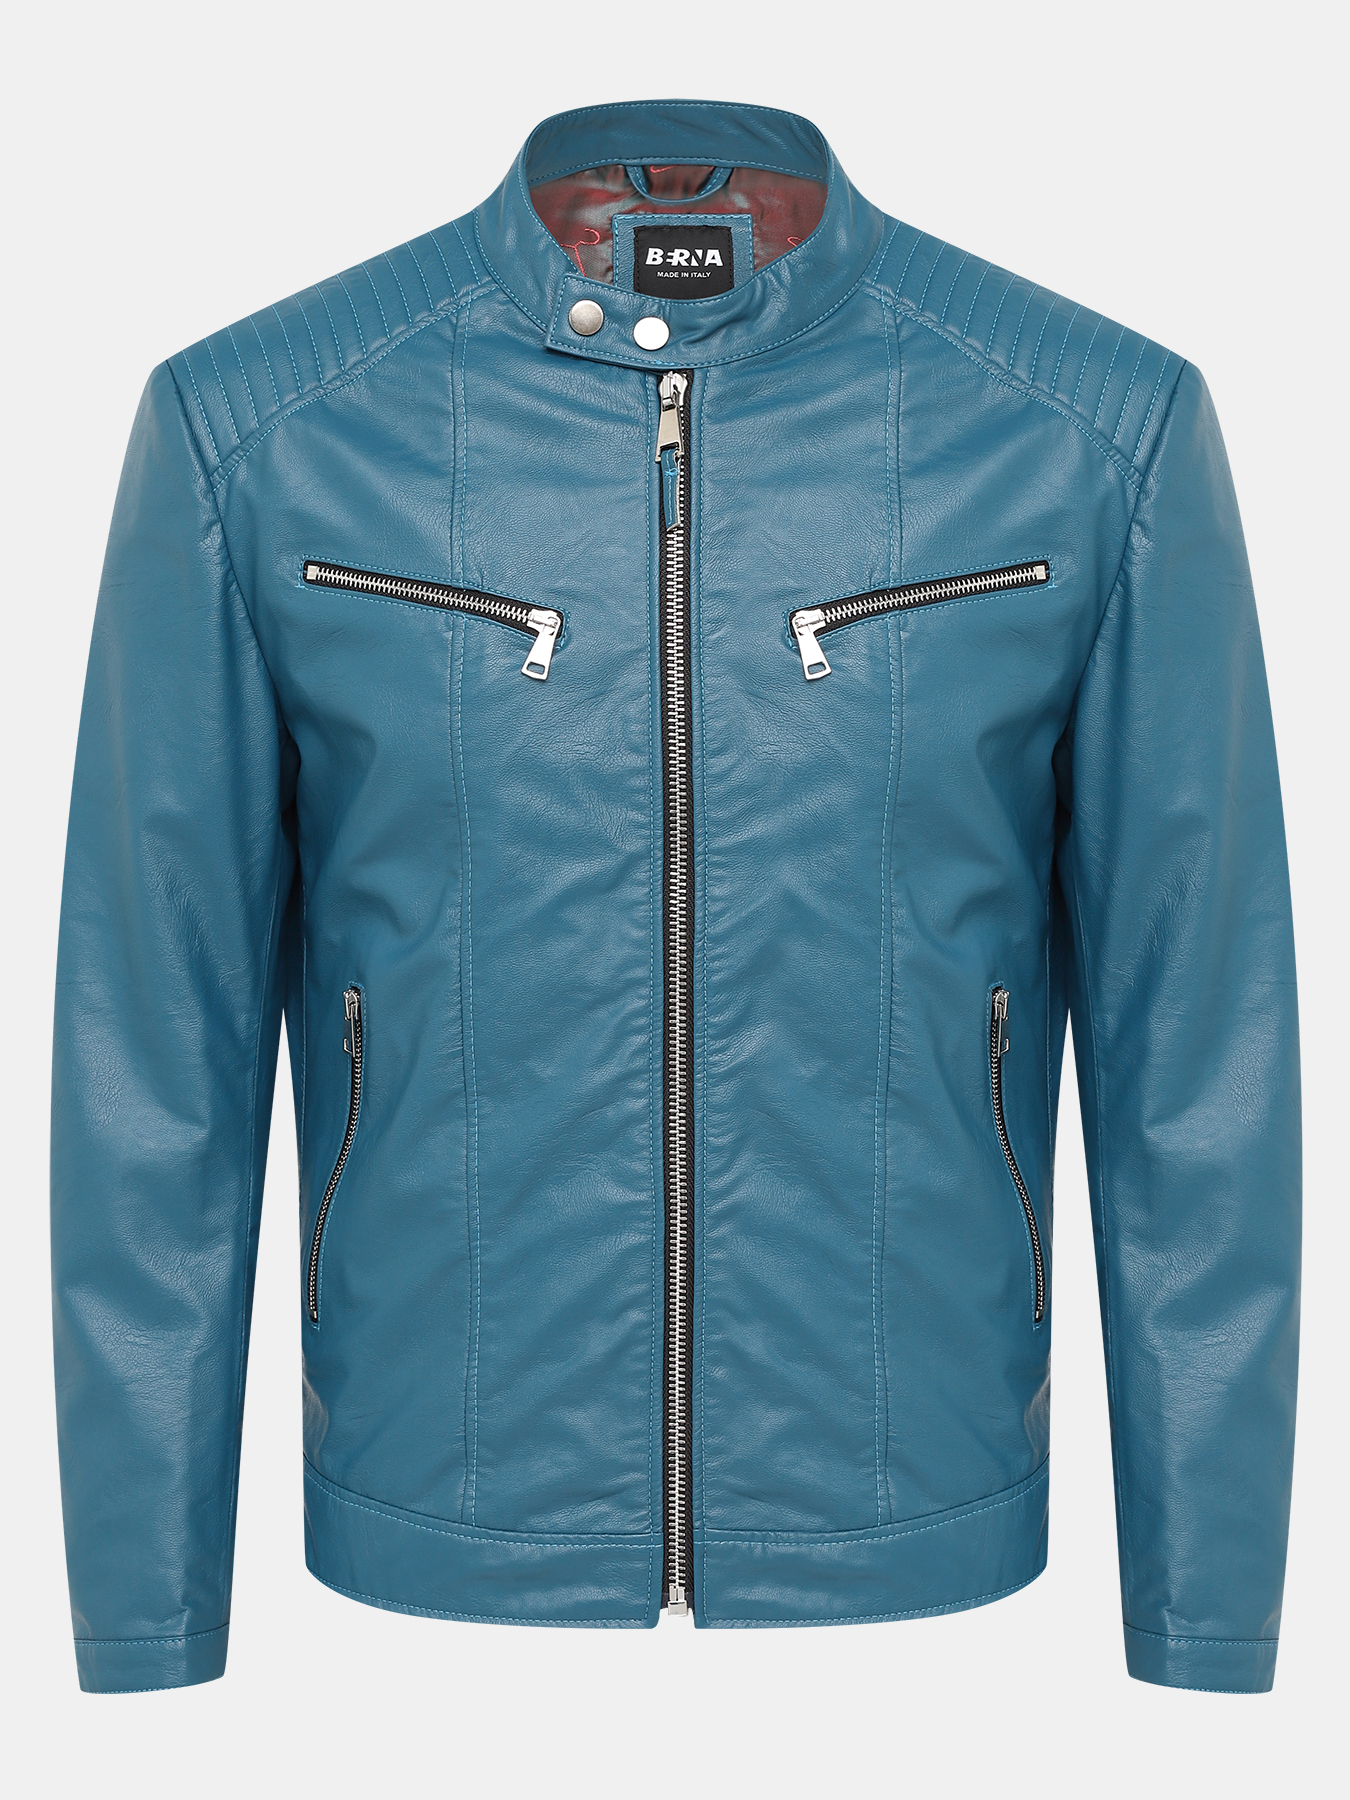 Куртка BERNA 423692-045, цвет синий, размер 52-54